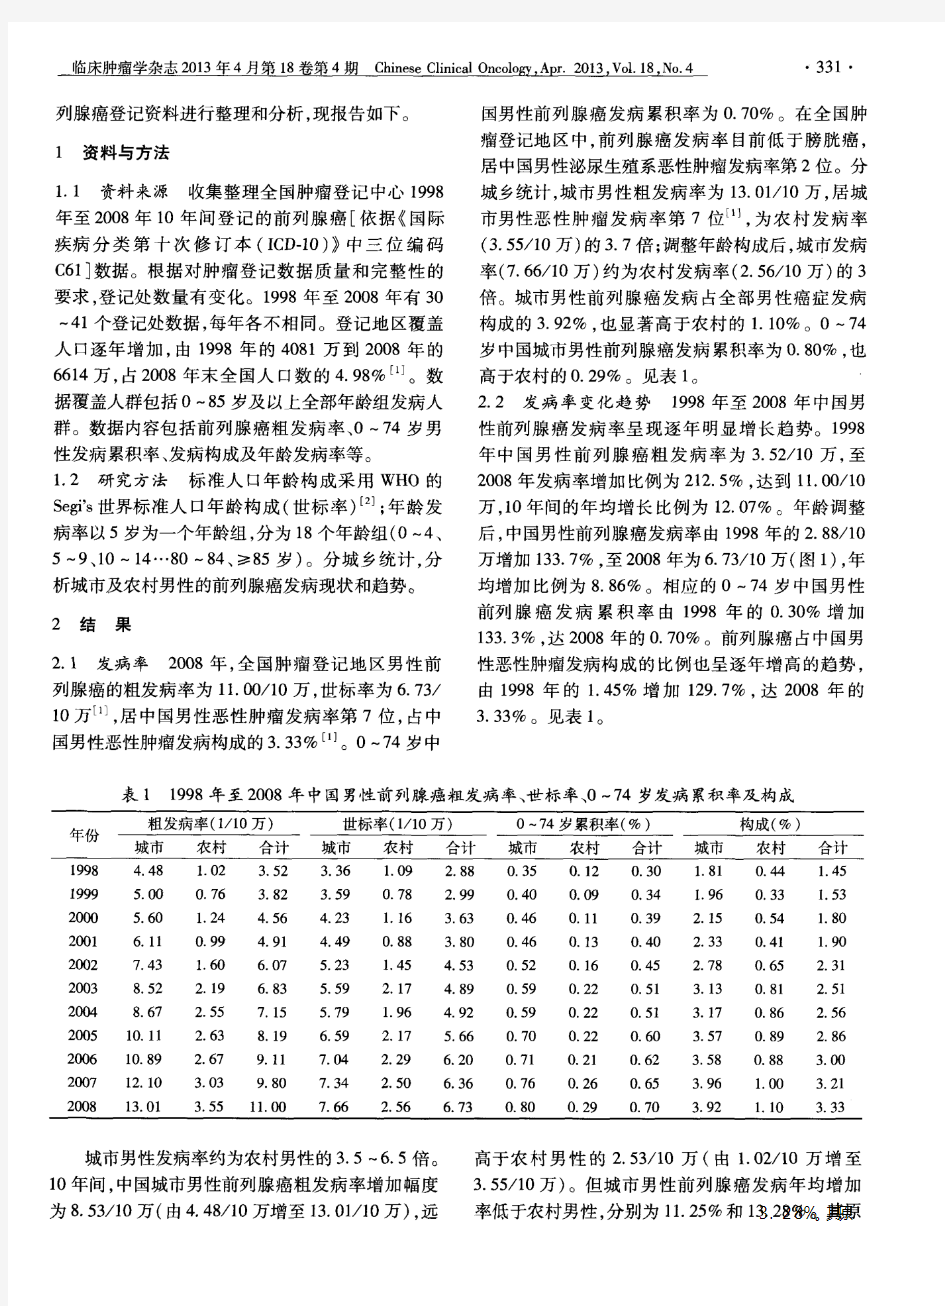 中国前列腺癌发病现状和流行趋势分析